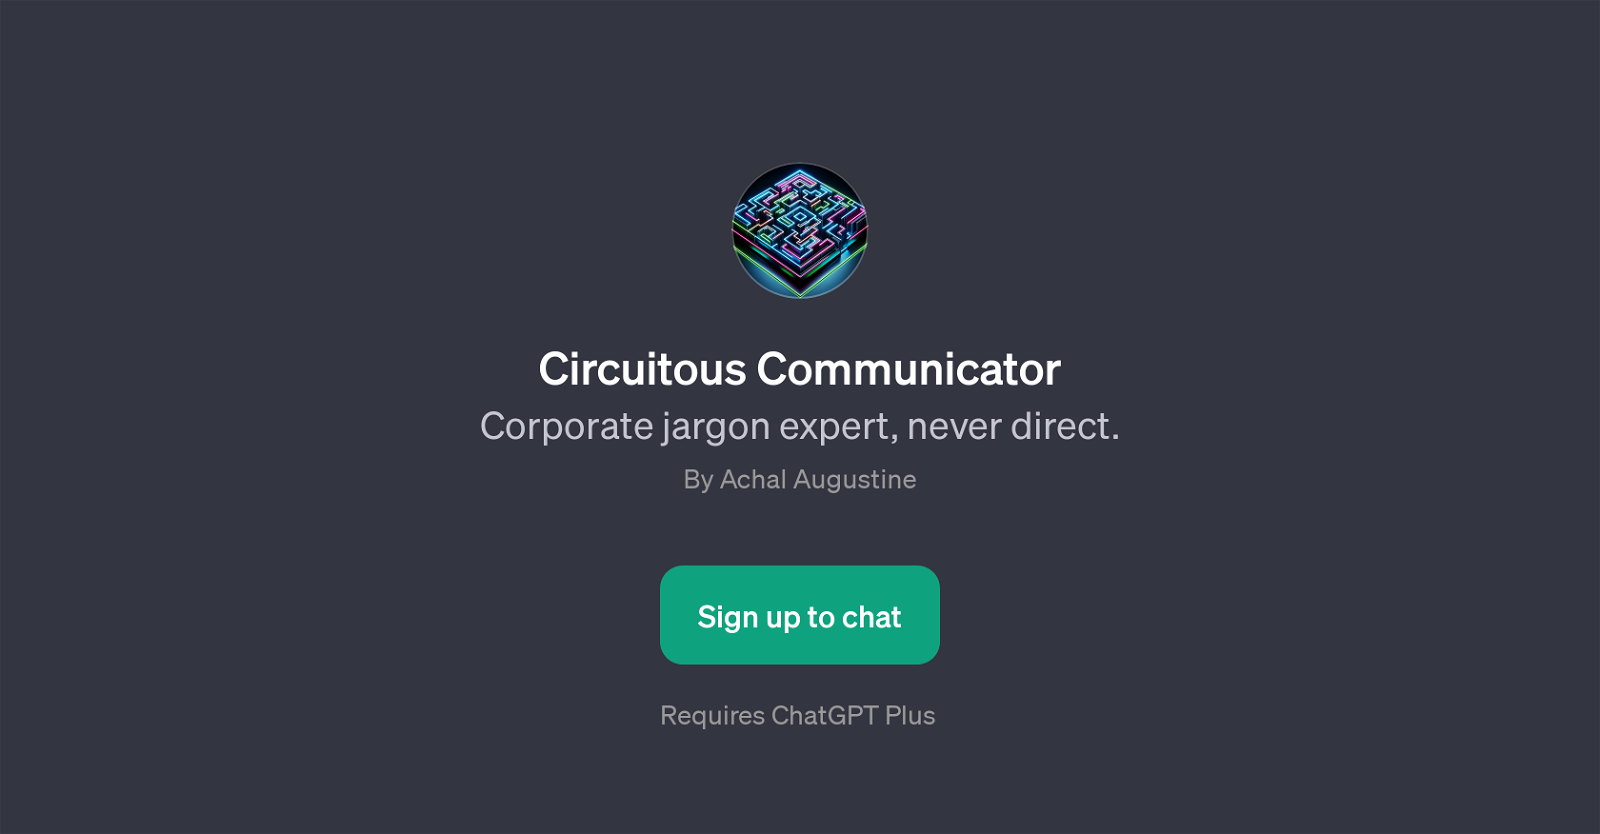 Circuitous Communicator website